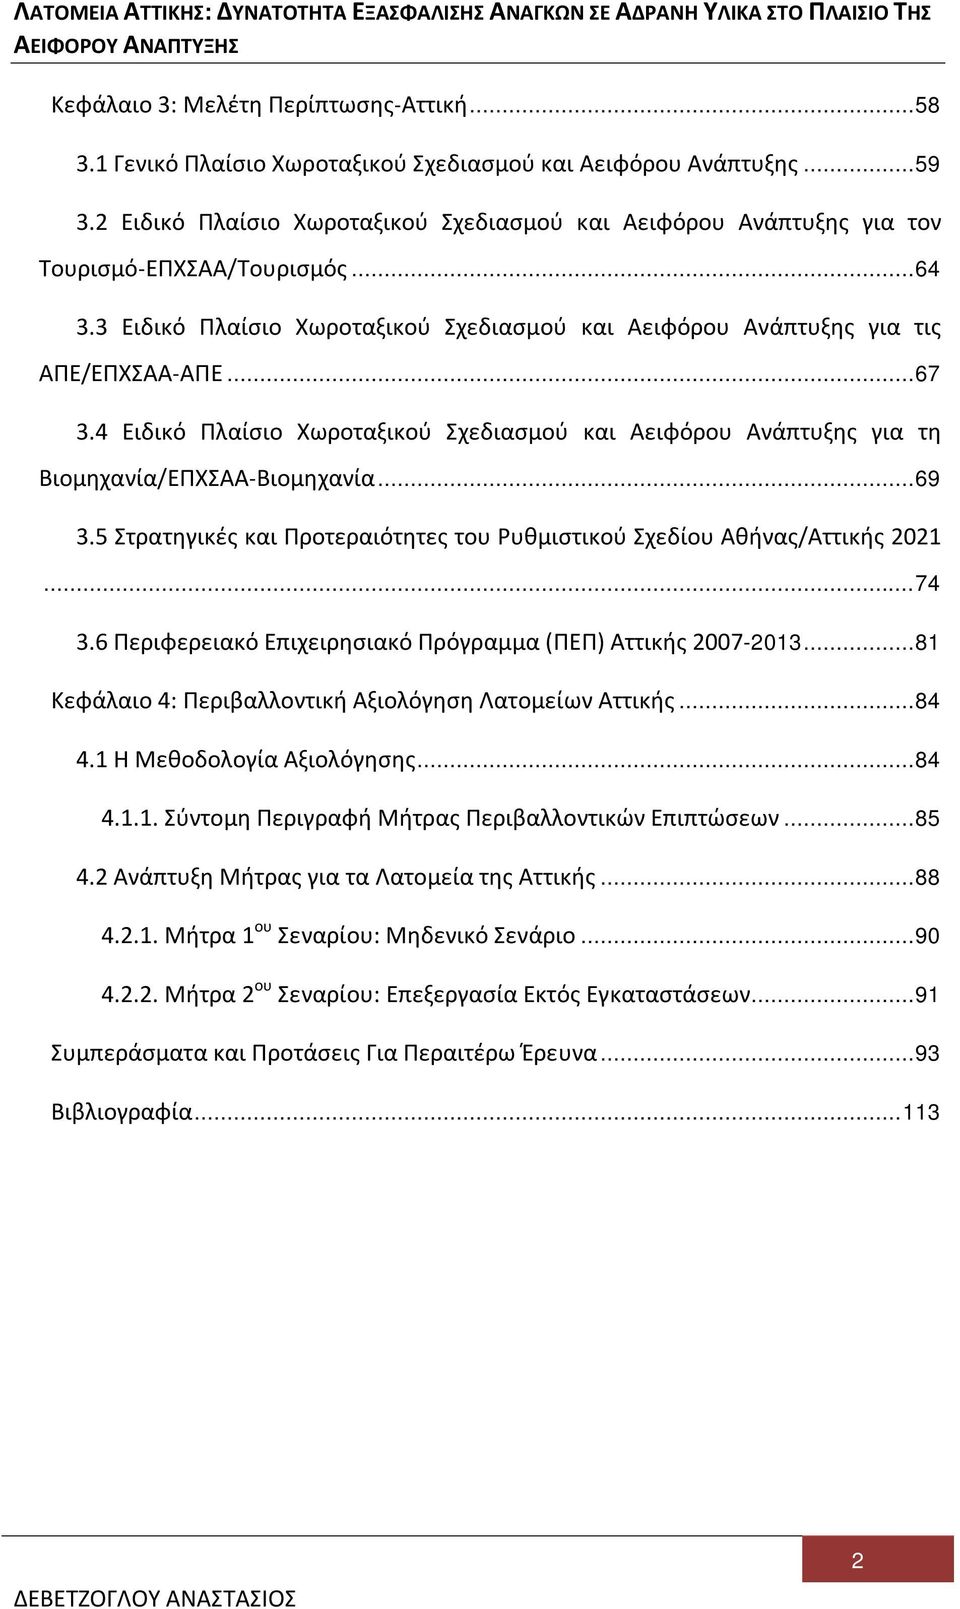 4 Ειδικό Πλαίσιο Χωροταξικού Σχεδιασμού και Αειφόρου Ανάπτυξης για τη Βιομηχανία/ΕΠΧΣΑΑ-Βιομηχανία... 69 3.5 Στρατηγικές και Προτεραιότητες του Ρυθμιστικού Σχεδίου Αθήνας/Αττικής 2021... 74 3.